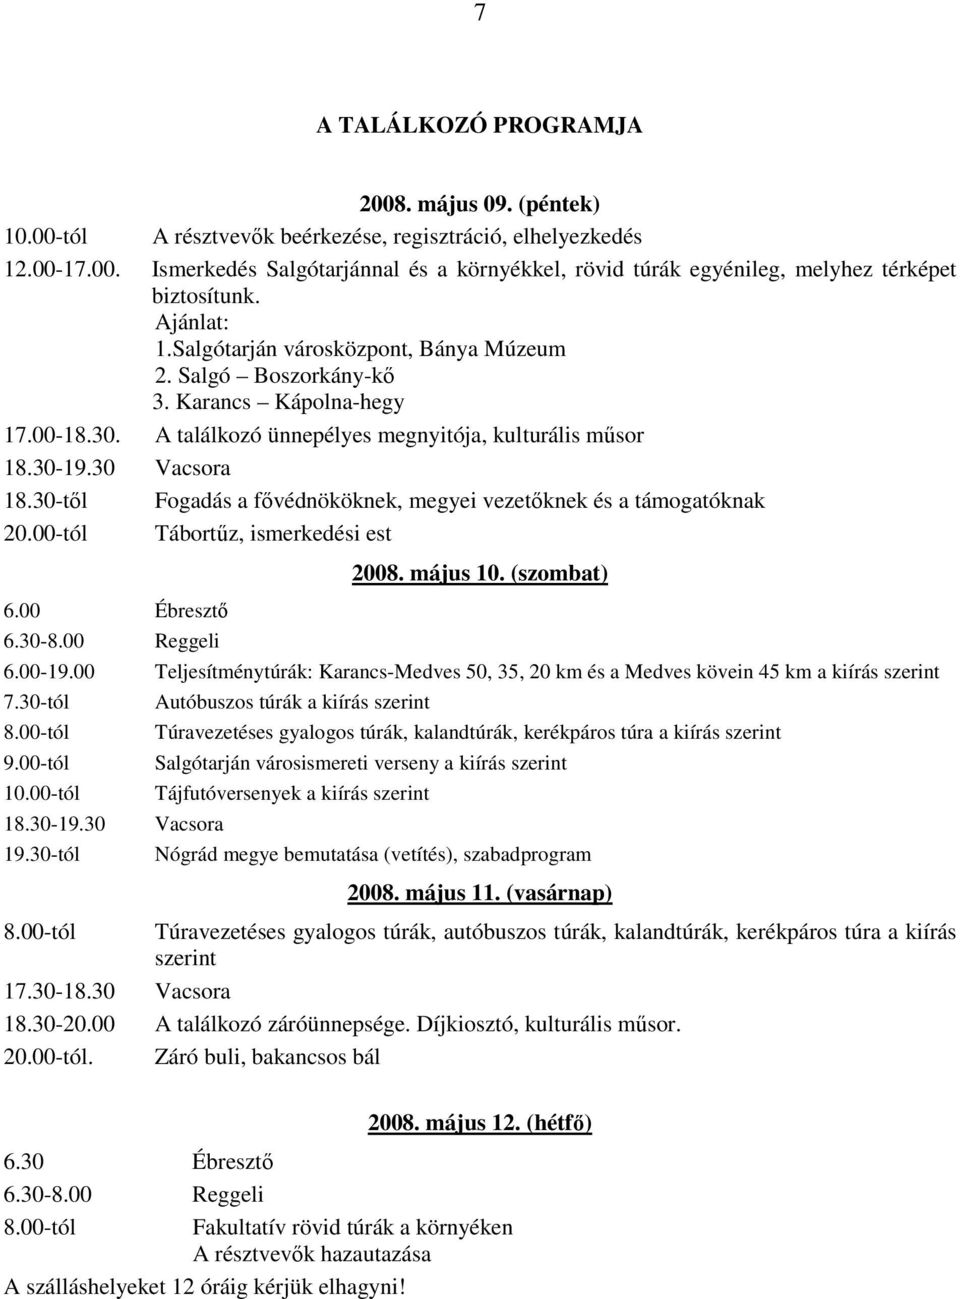 30-tıl Fogadás a fıvédnököknek, megyei vezetıknek és a támogatóknak 20.00-tól Tábortőz, ismerkedési est 6.00 Ébresztı 6.30-8.00 Reggeli 2008. május 10. (szombat) 6.00-19.